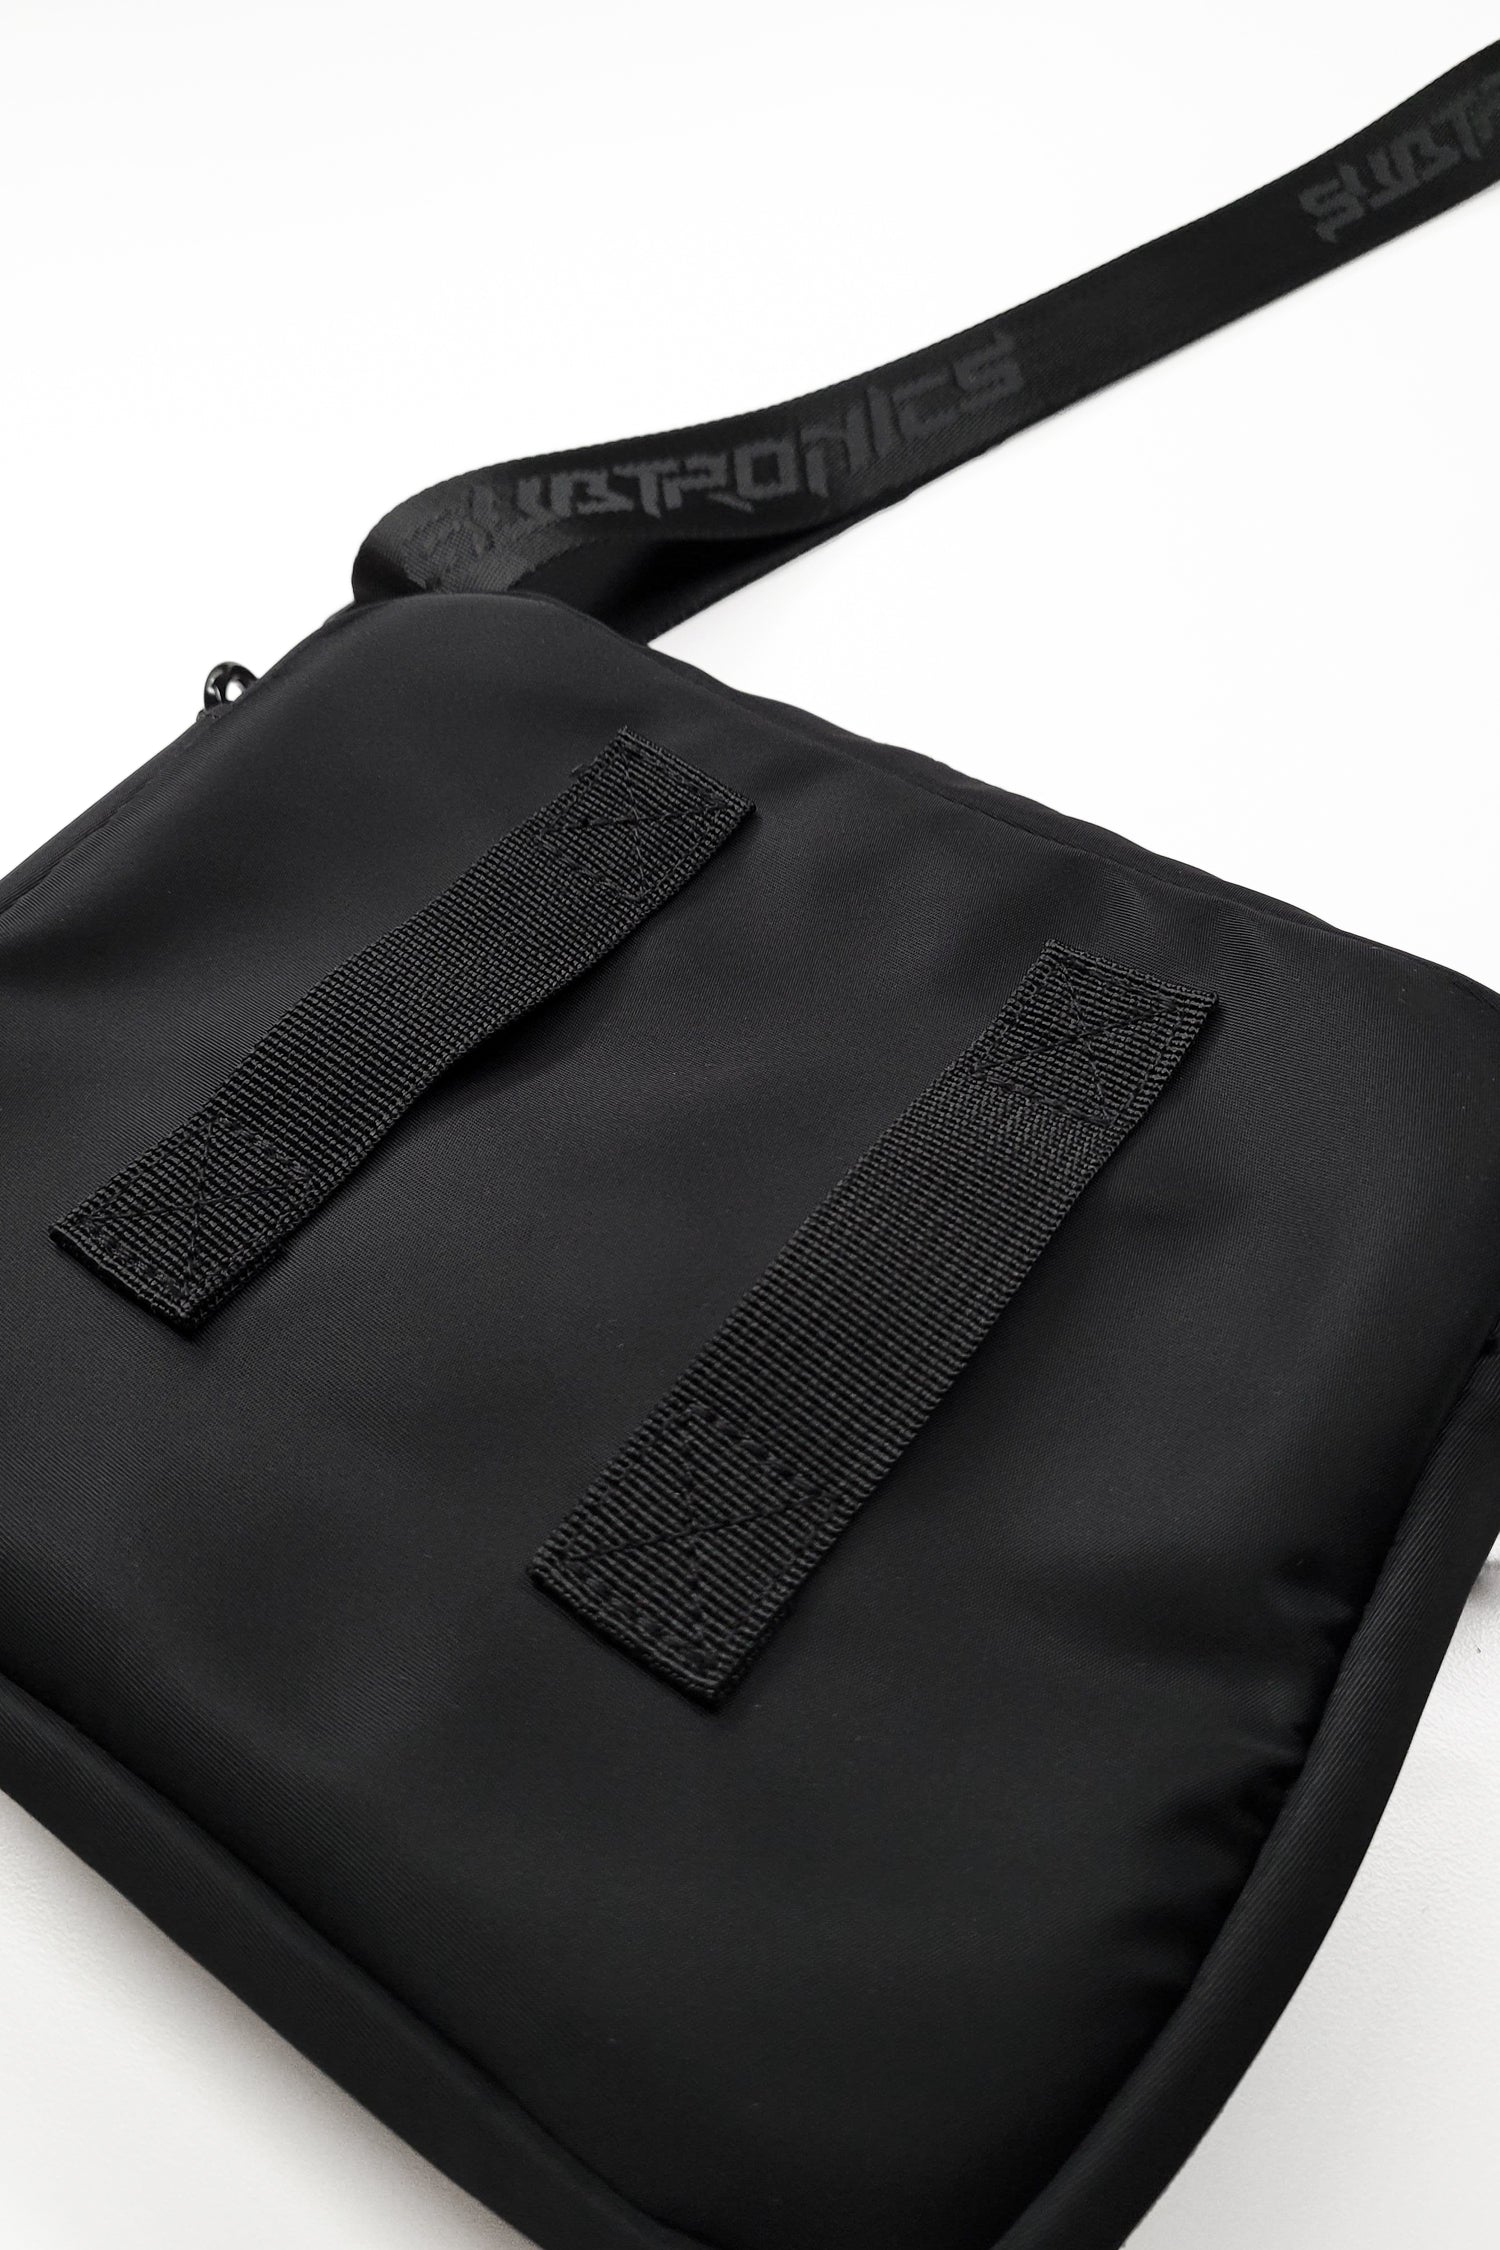 Subtronics Signature V2 Collection - Doppler Beam Shoulder Bag